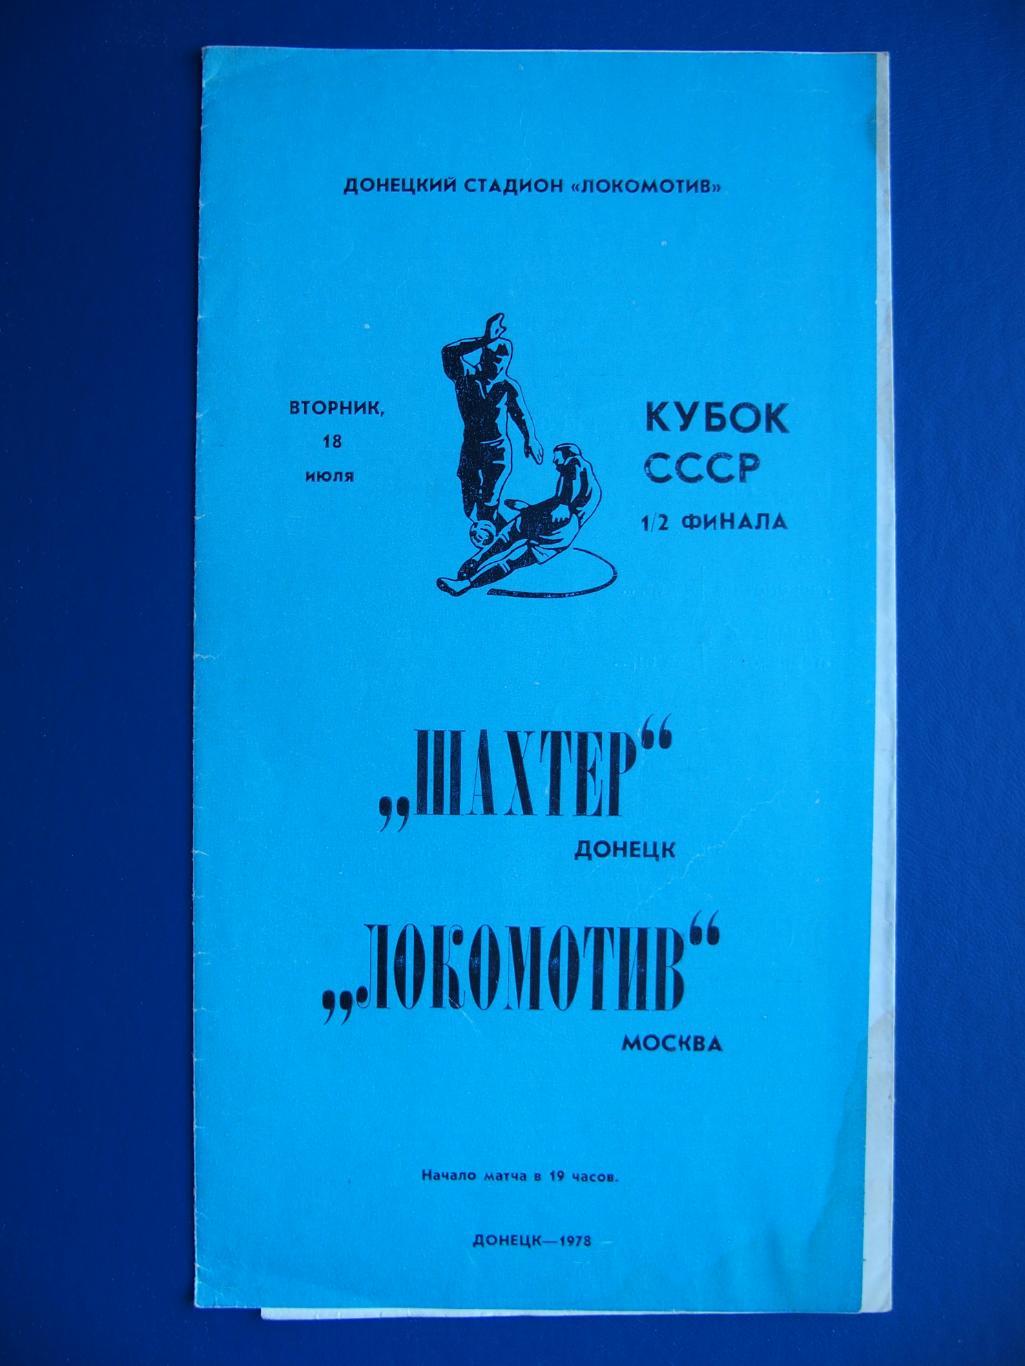 Шахтер Донецк - Локомотив Москва. 18 июля 1978 г. Кубок СССР, 1/2 финала.